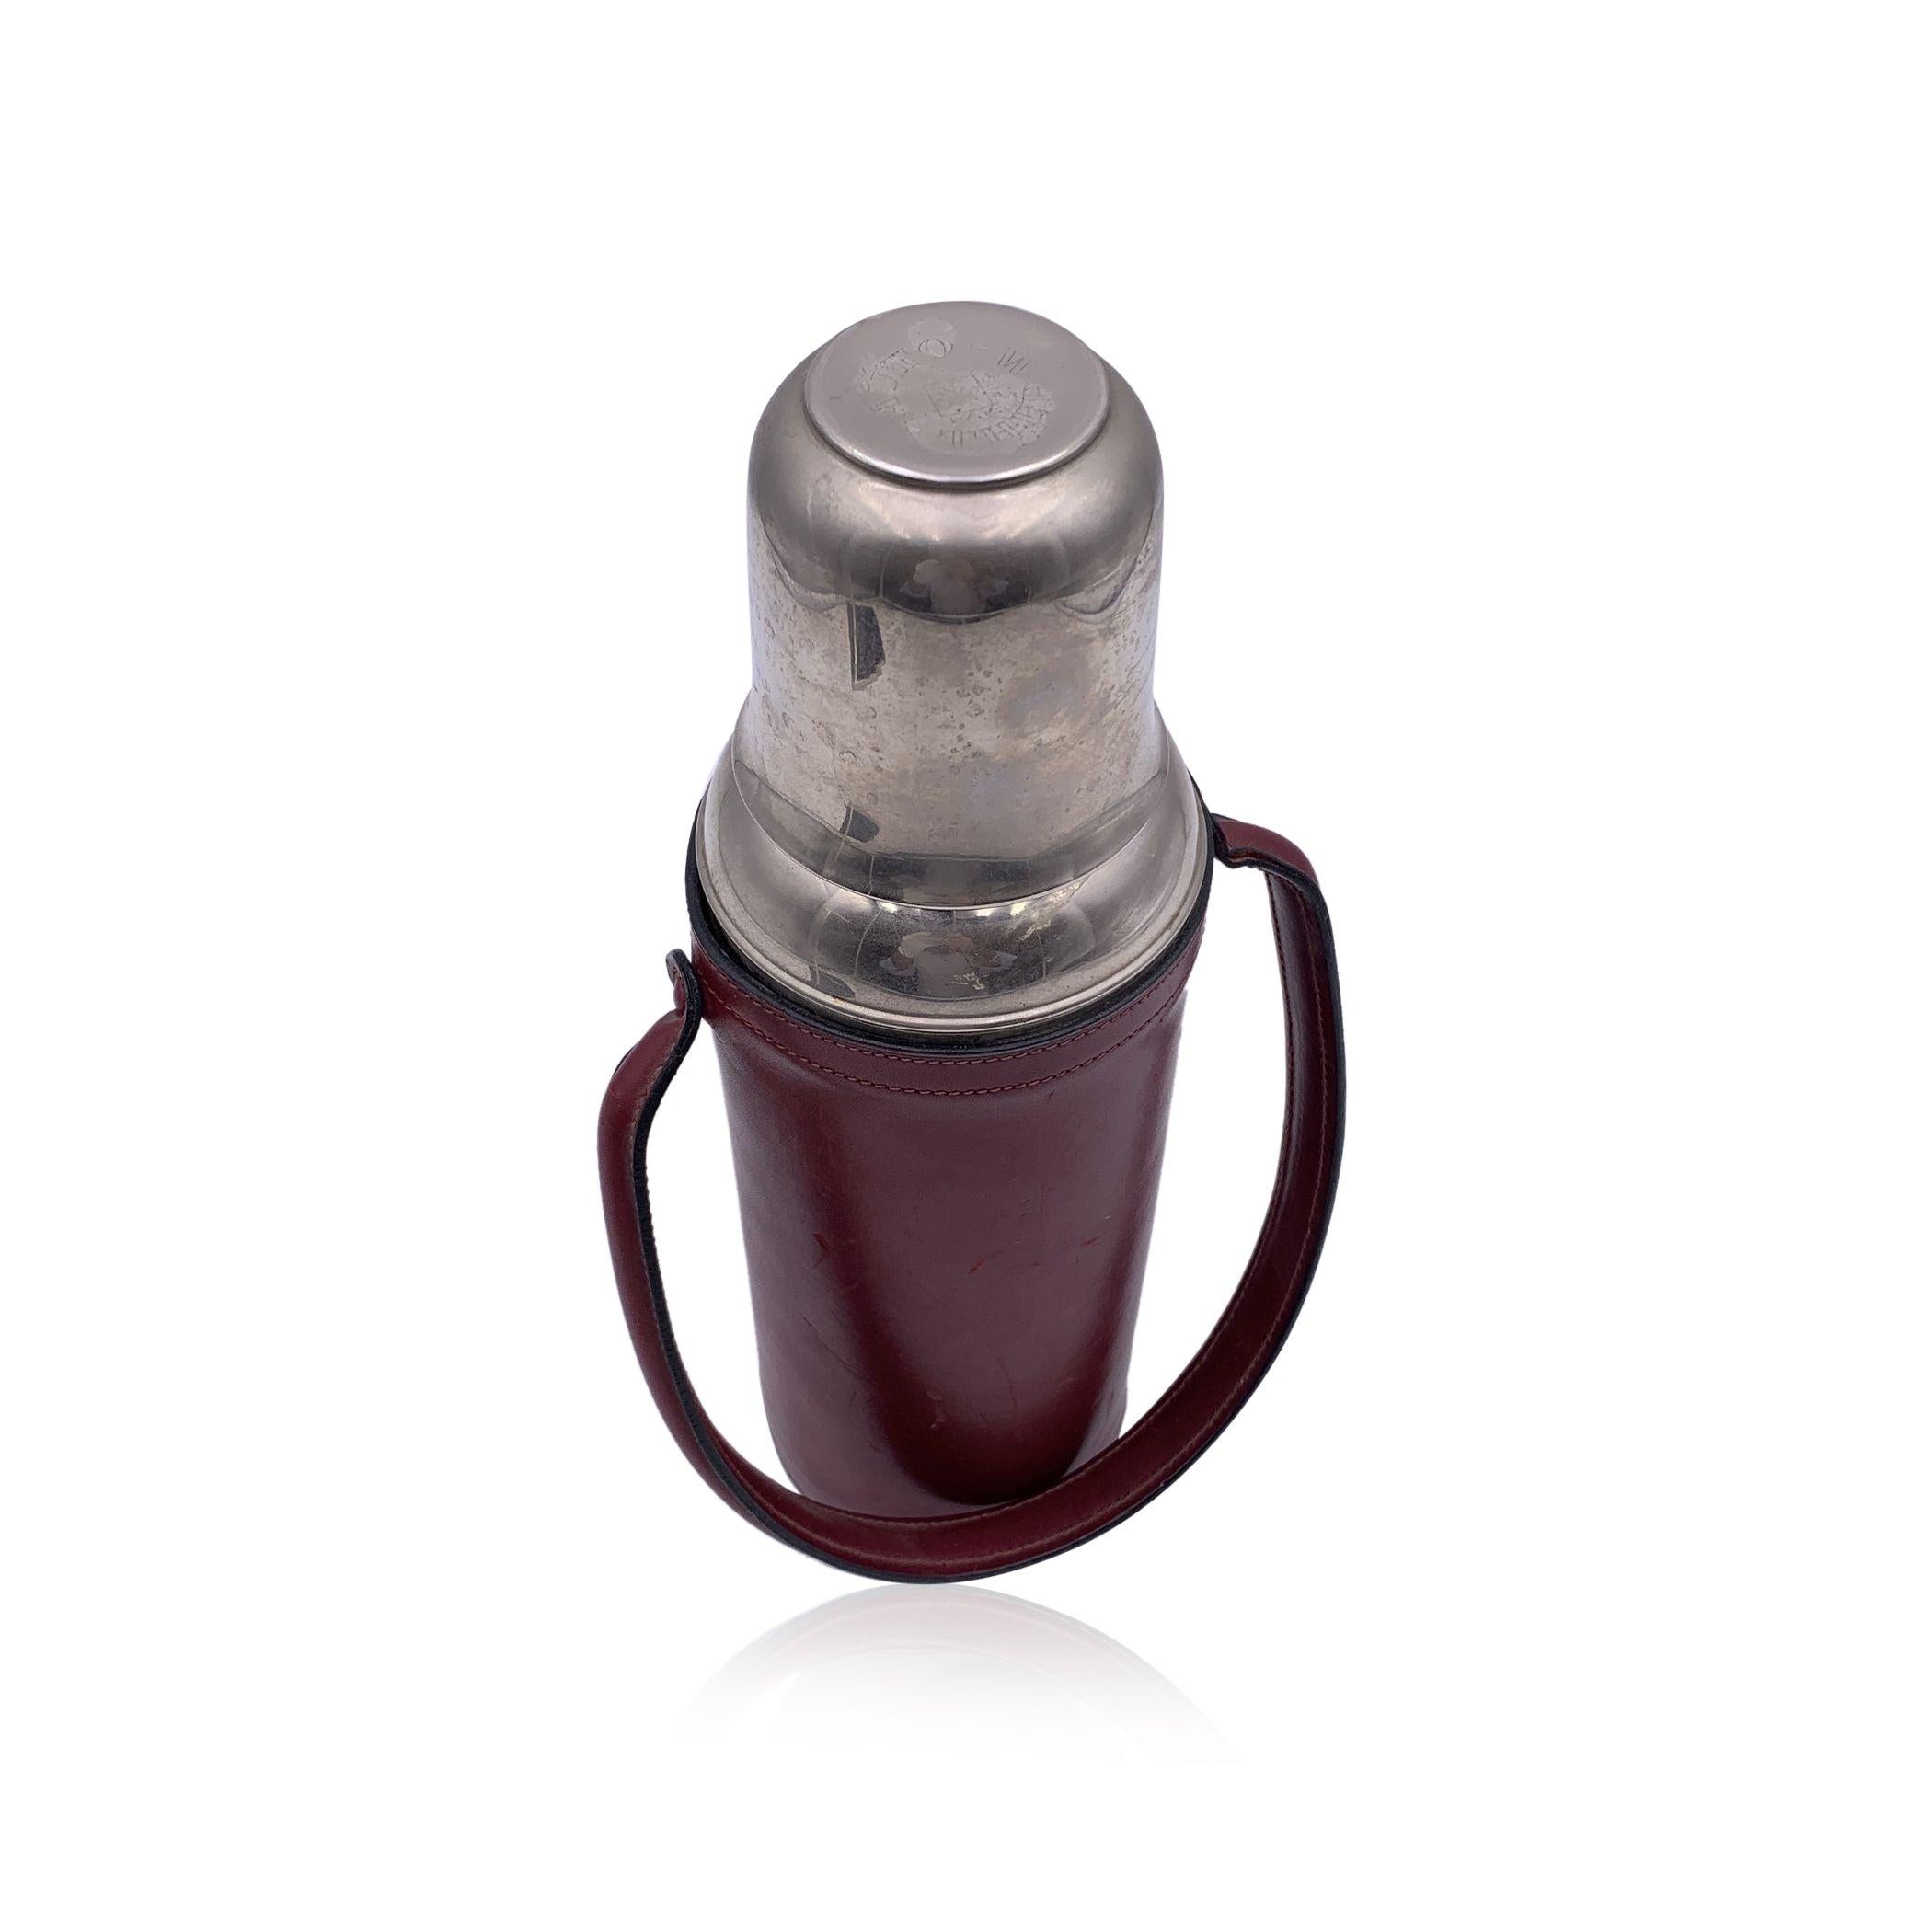 Vintage Vacuum flask/Thermos en acier inoxydable par FRANZI avec couvercle en métal. La partie supérieure se dévisse et constitue une coupe mignonne. Il se ferme à l'aide d'un bouchon à vis. Couverture en cuir bourgogne avec poignée. Hauteur : 11,75